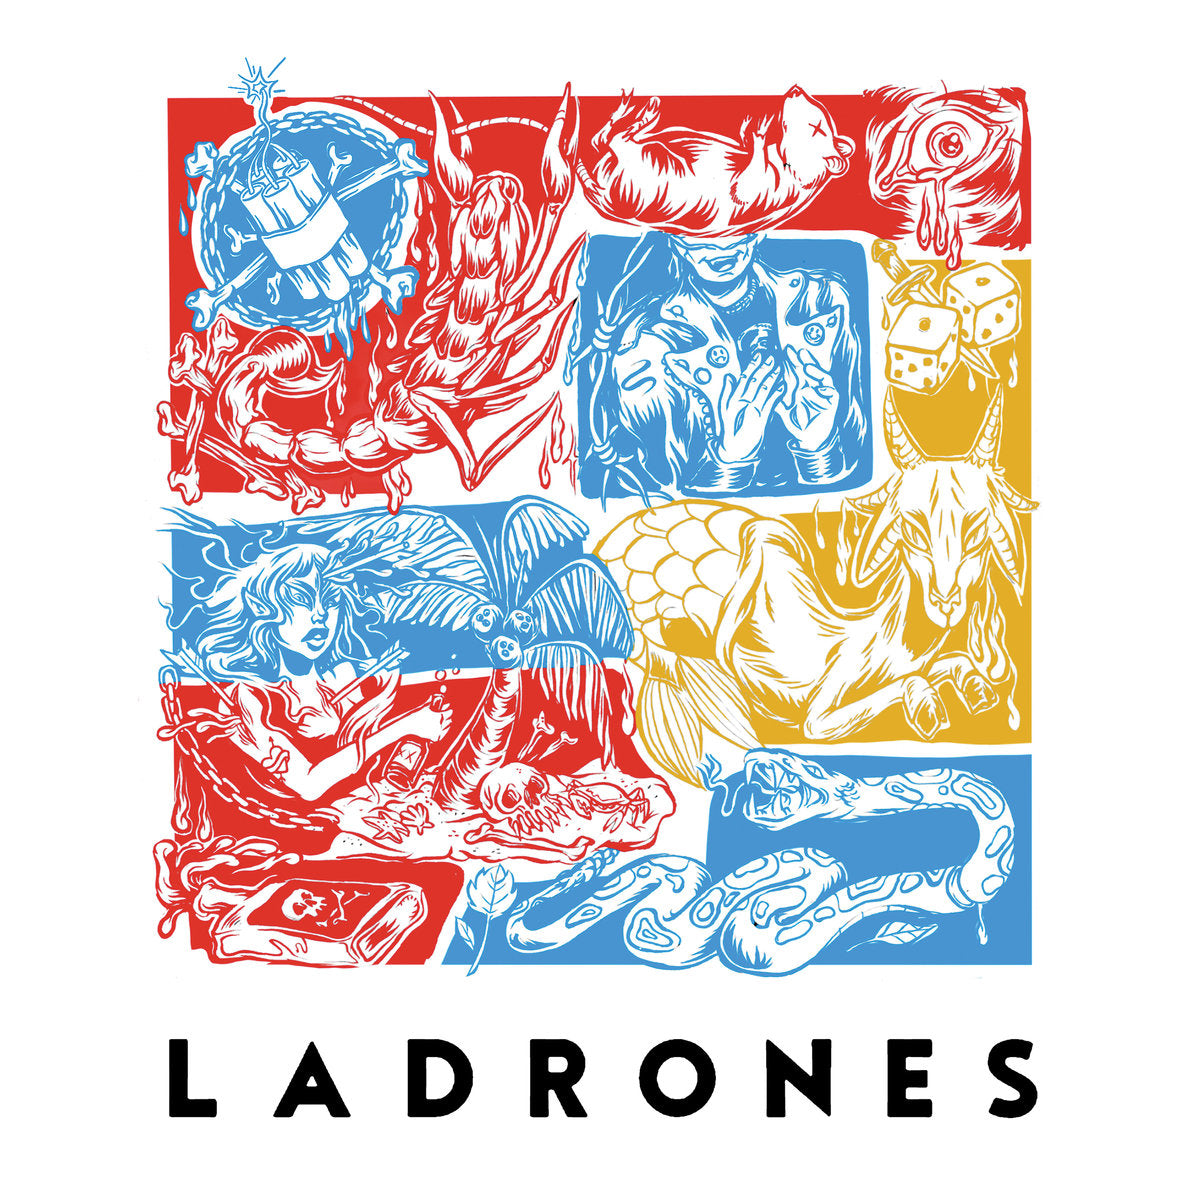 Ladrones - Ladrones |  Vinyl LP | Ladrones - Ladrones (LP) | Records on Vinyl